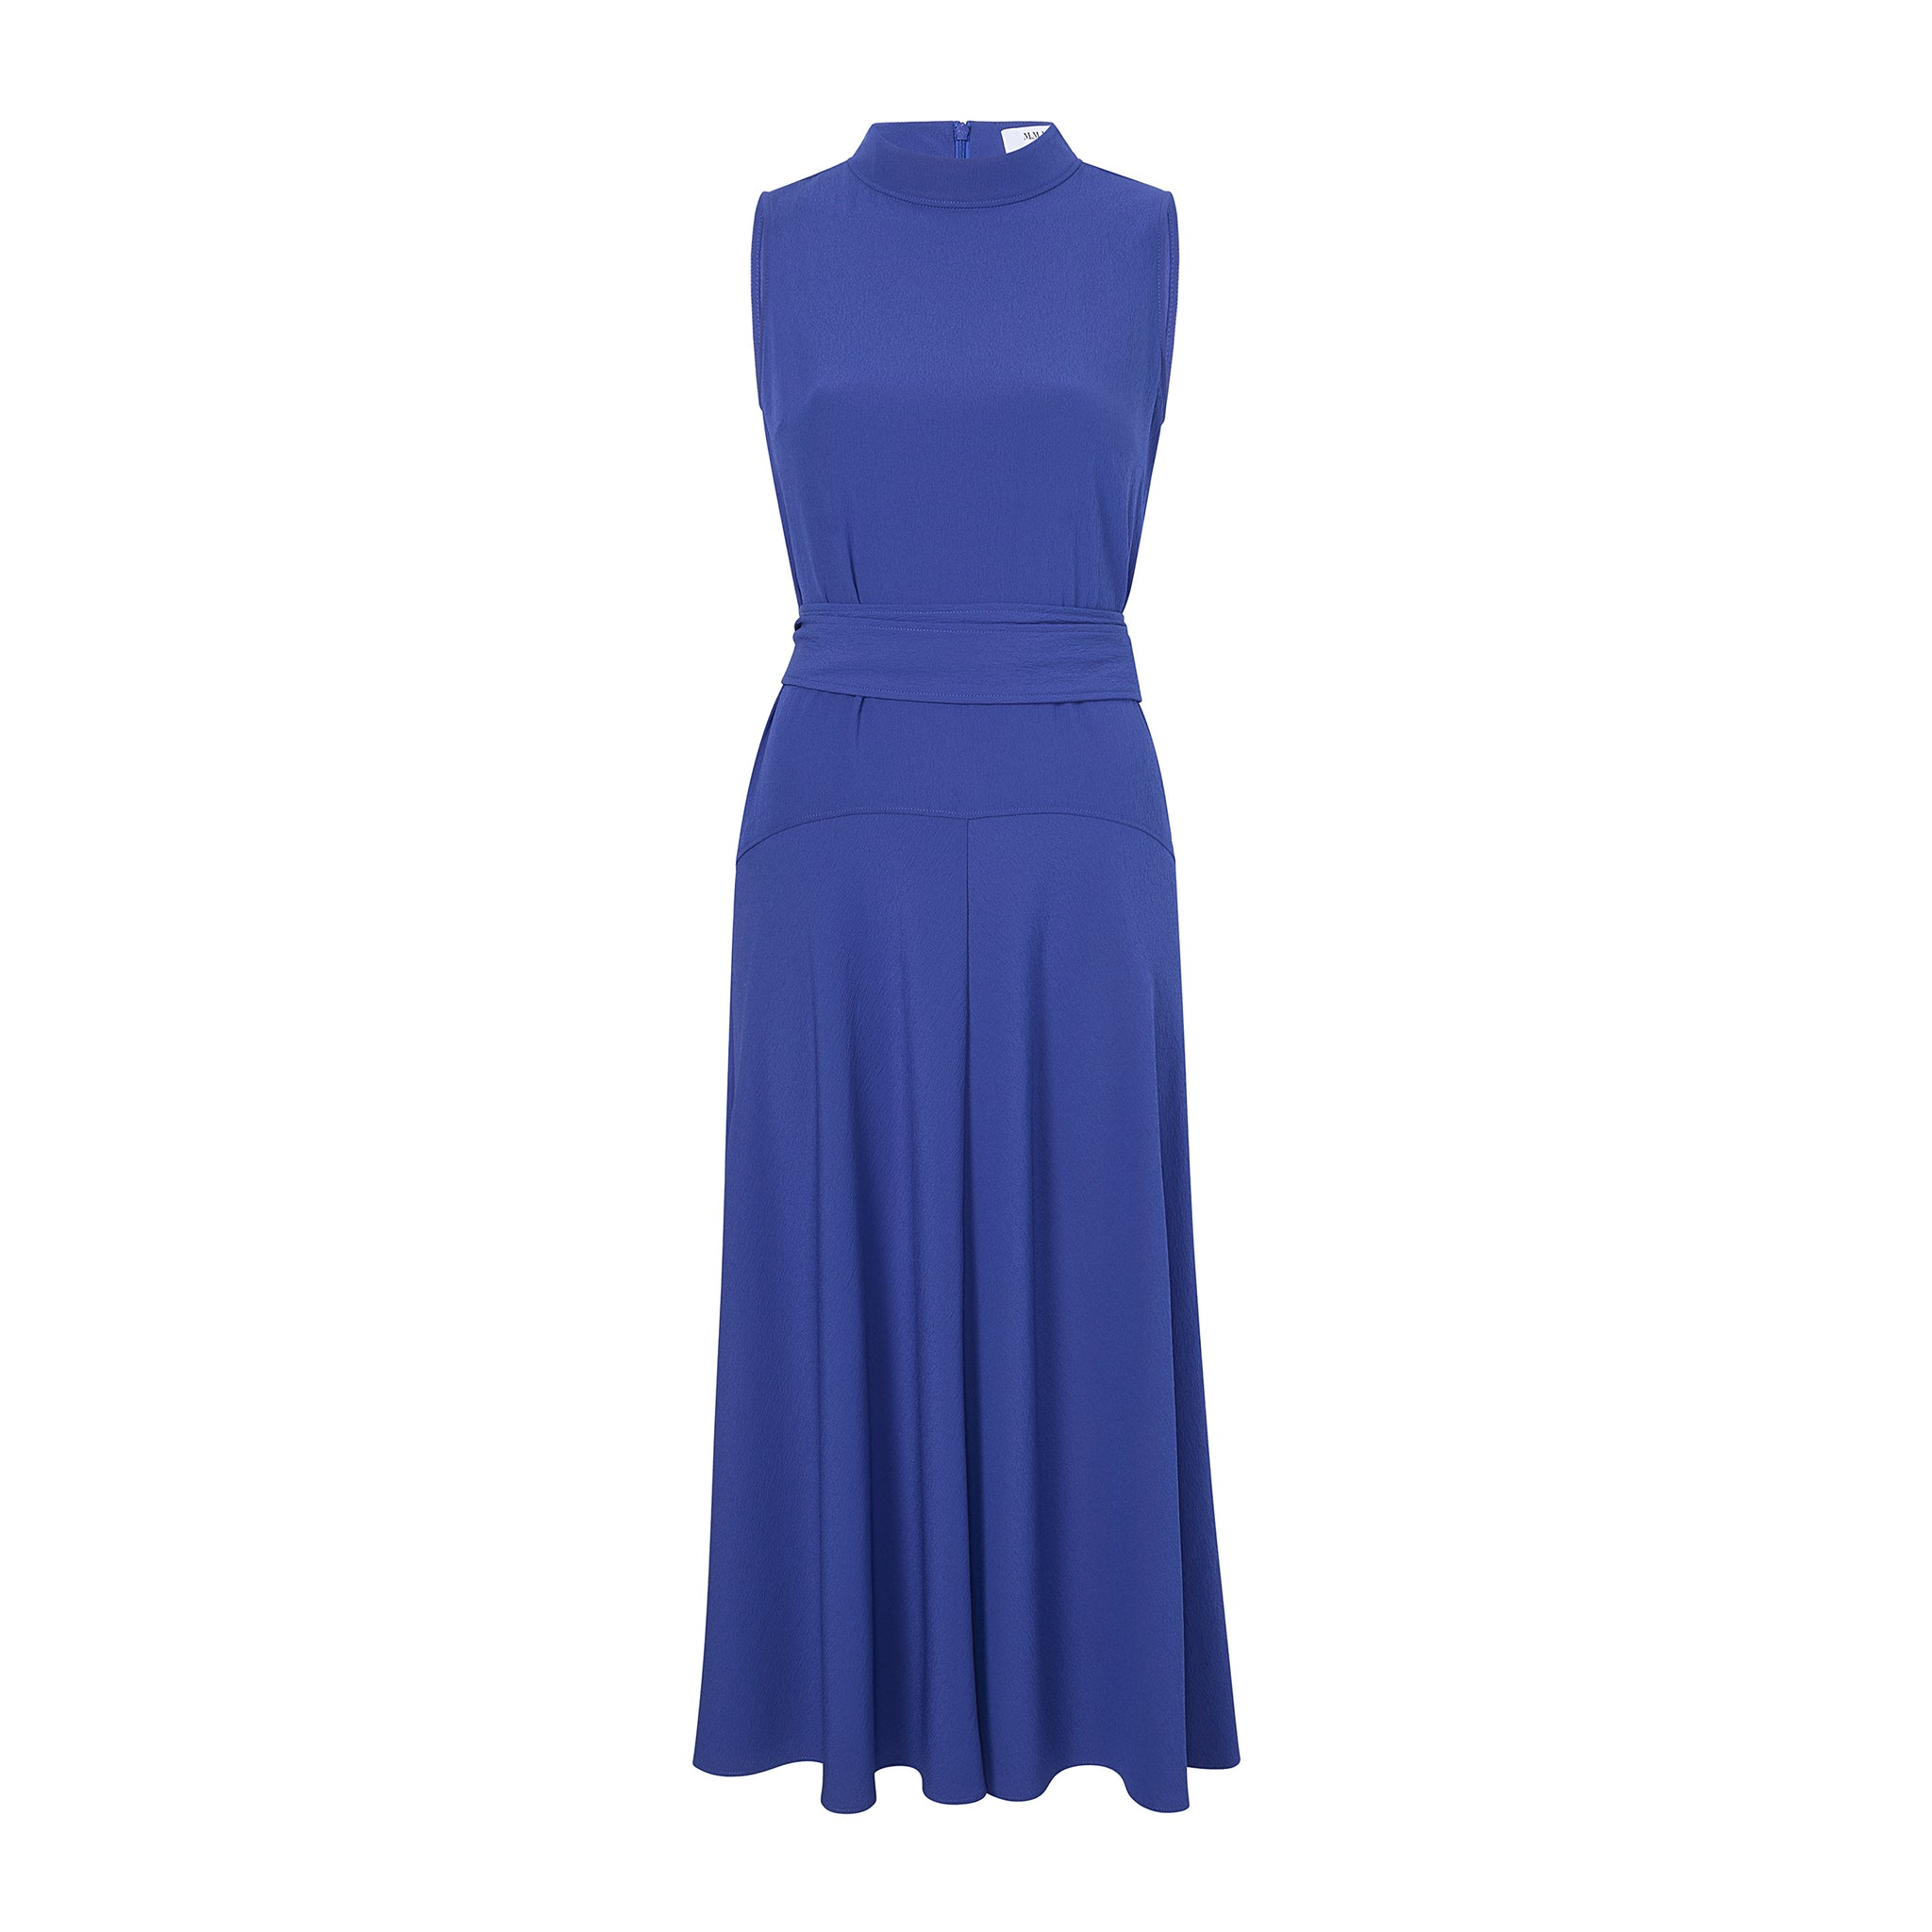 packshot image of the martina dress in royal blue